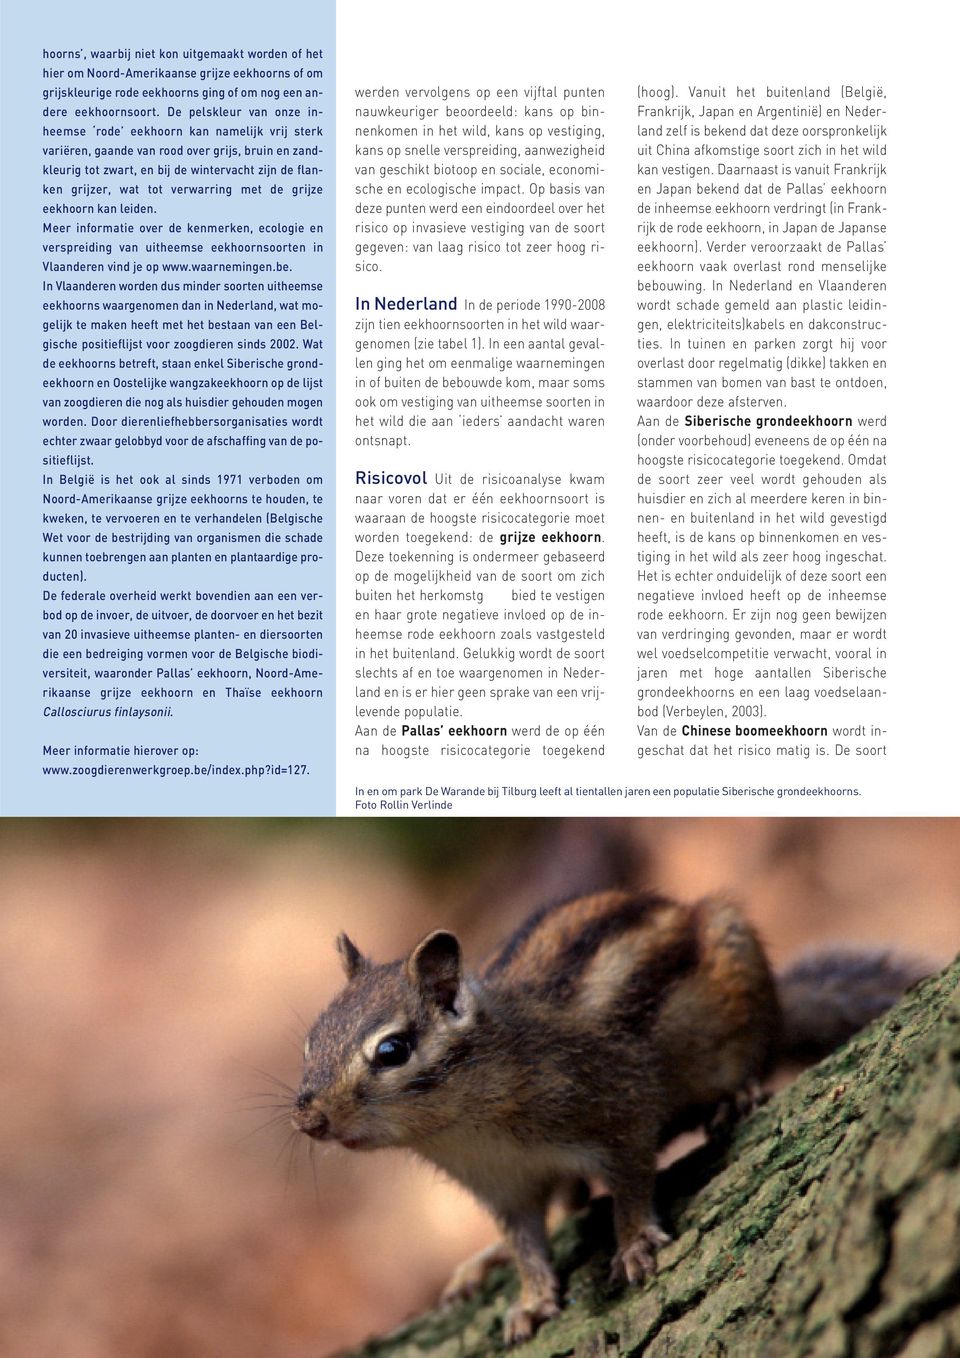 verwarring met de grijze eekhoorn kan leiden. Meer informatie over de kenmerken, ecologie en verspreiding van uitheemse eekhoornsoorten in Vlaanderen vind je op www.waarnemingen.be.